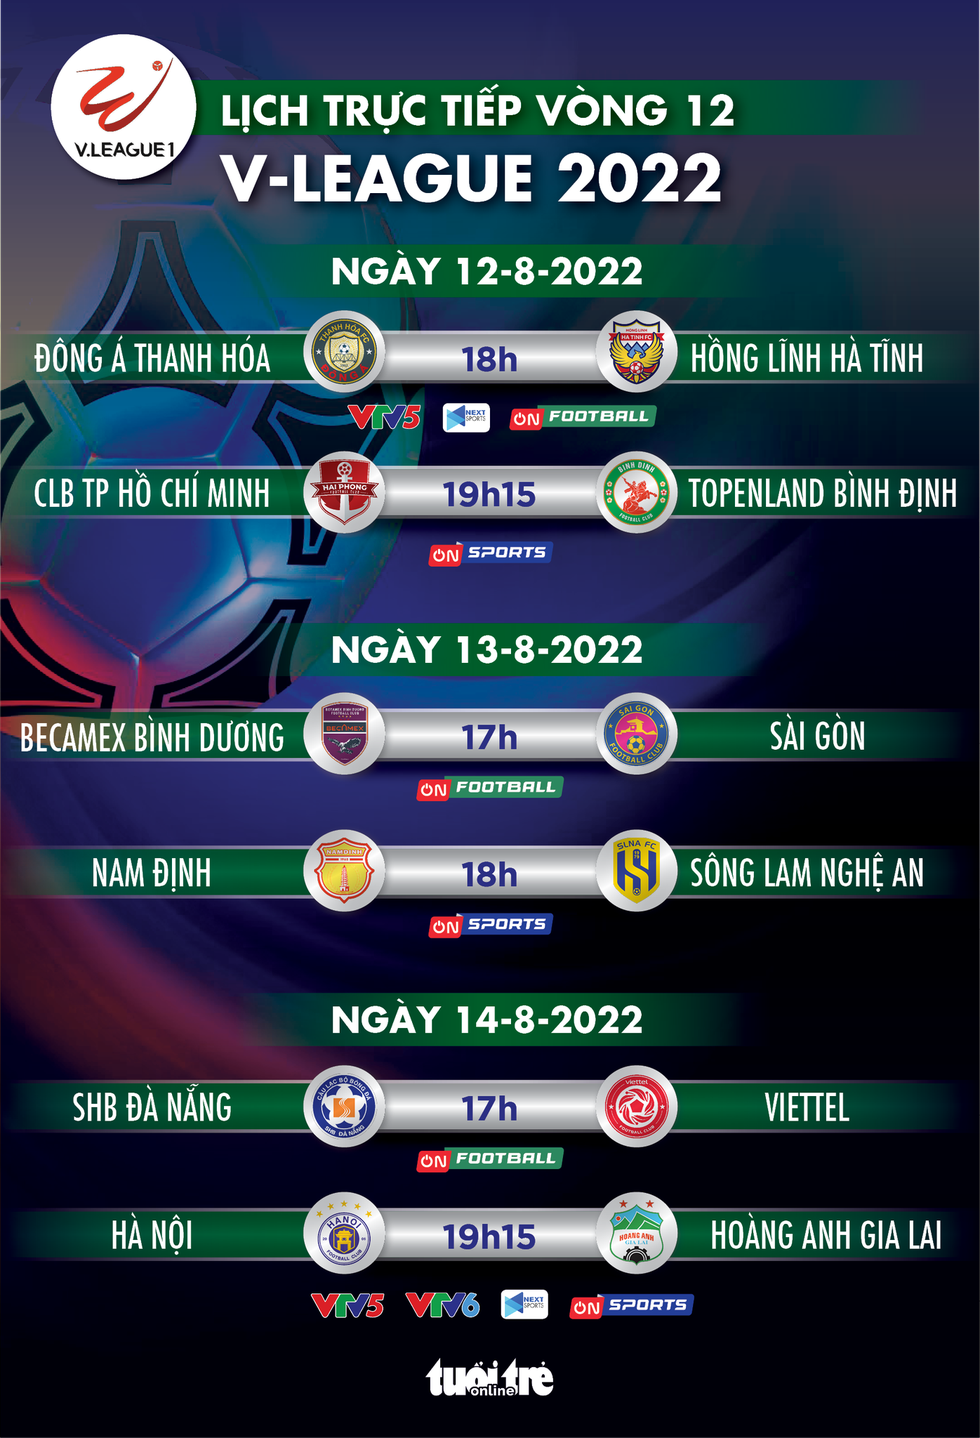 Lịch trực tiếp vòng 12 V-League: Siêu đại chiến Hà Nội - Hoàng Anh Gia Lai - Ảnh 1.